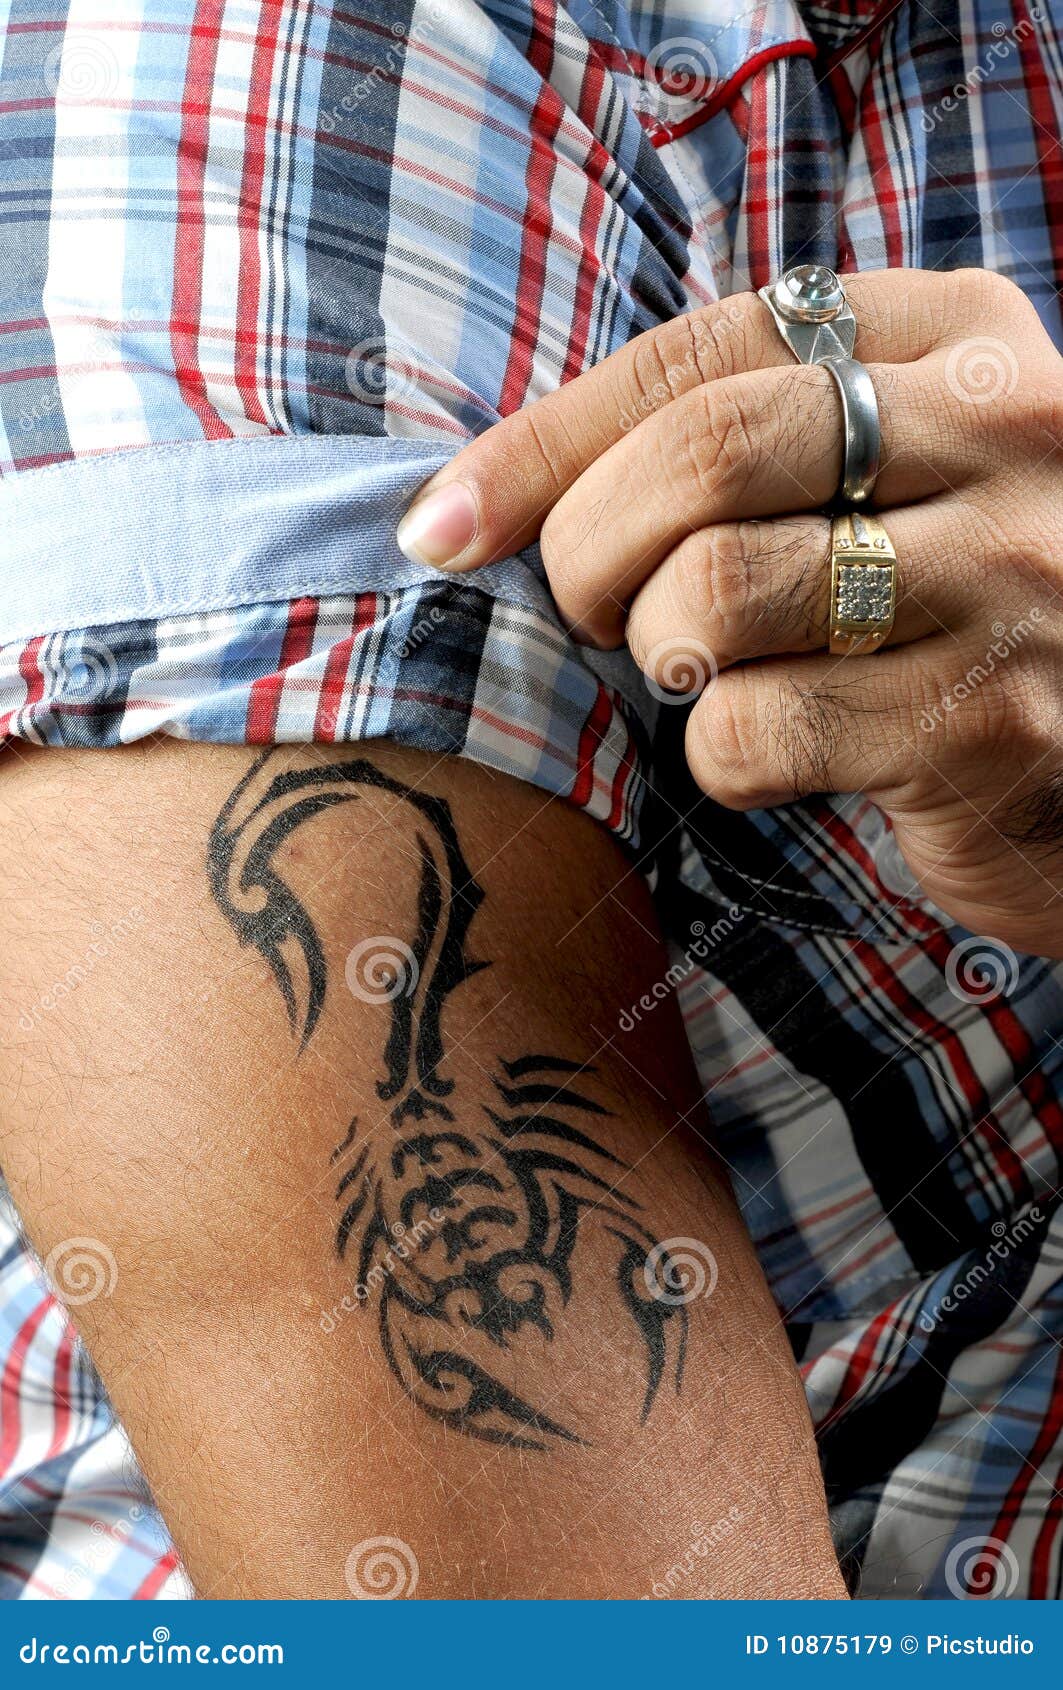 Rolex tattoo | Hand tattoos for guys, Full sleeve tattoo design, Rolex  tattoo